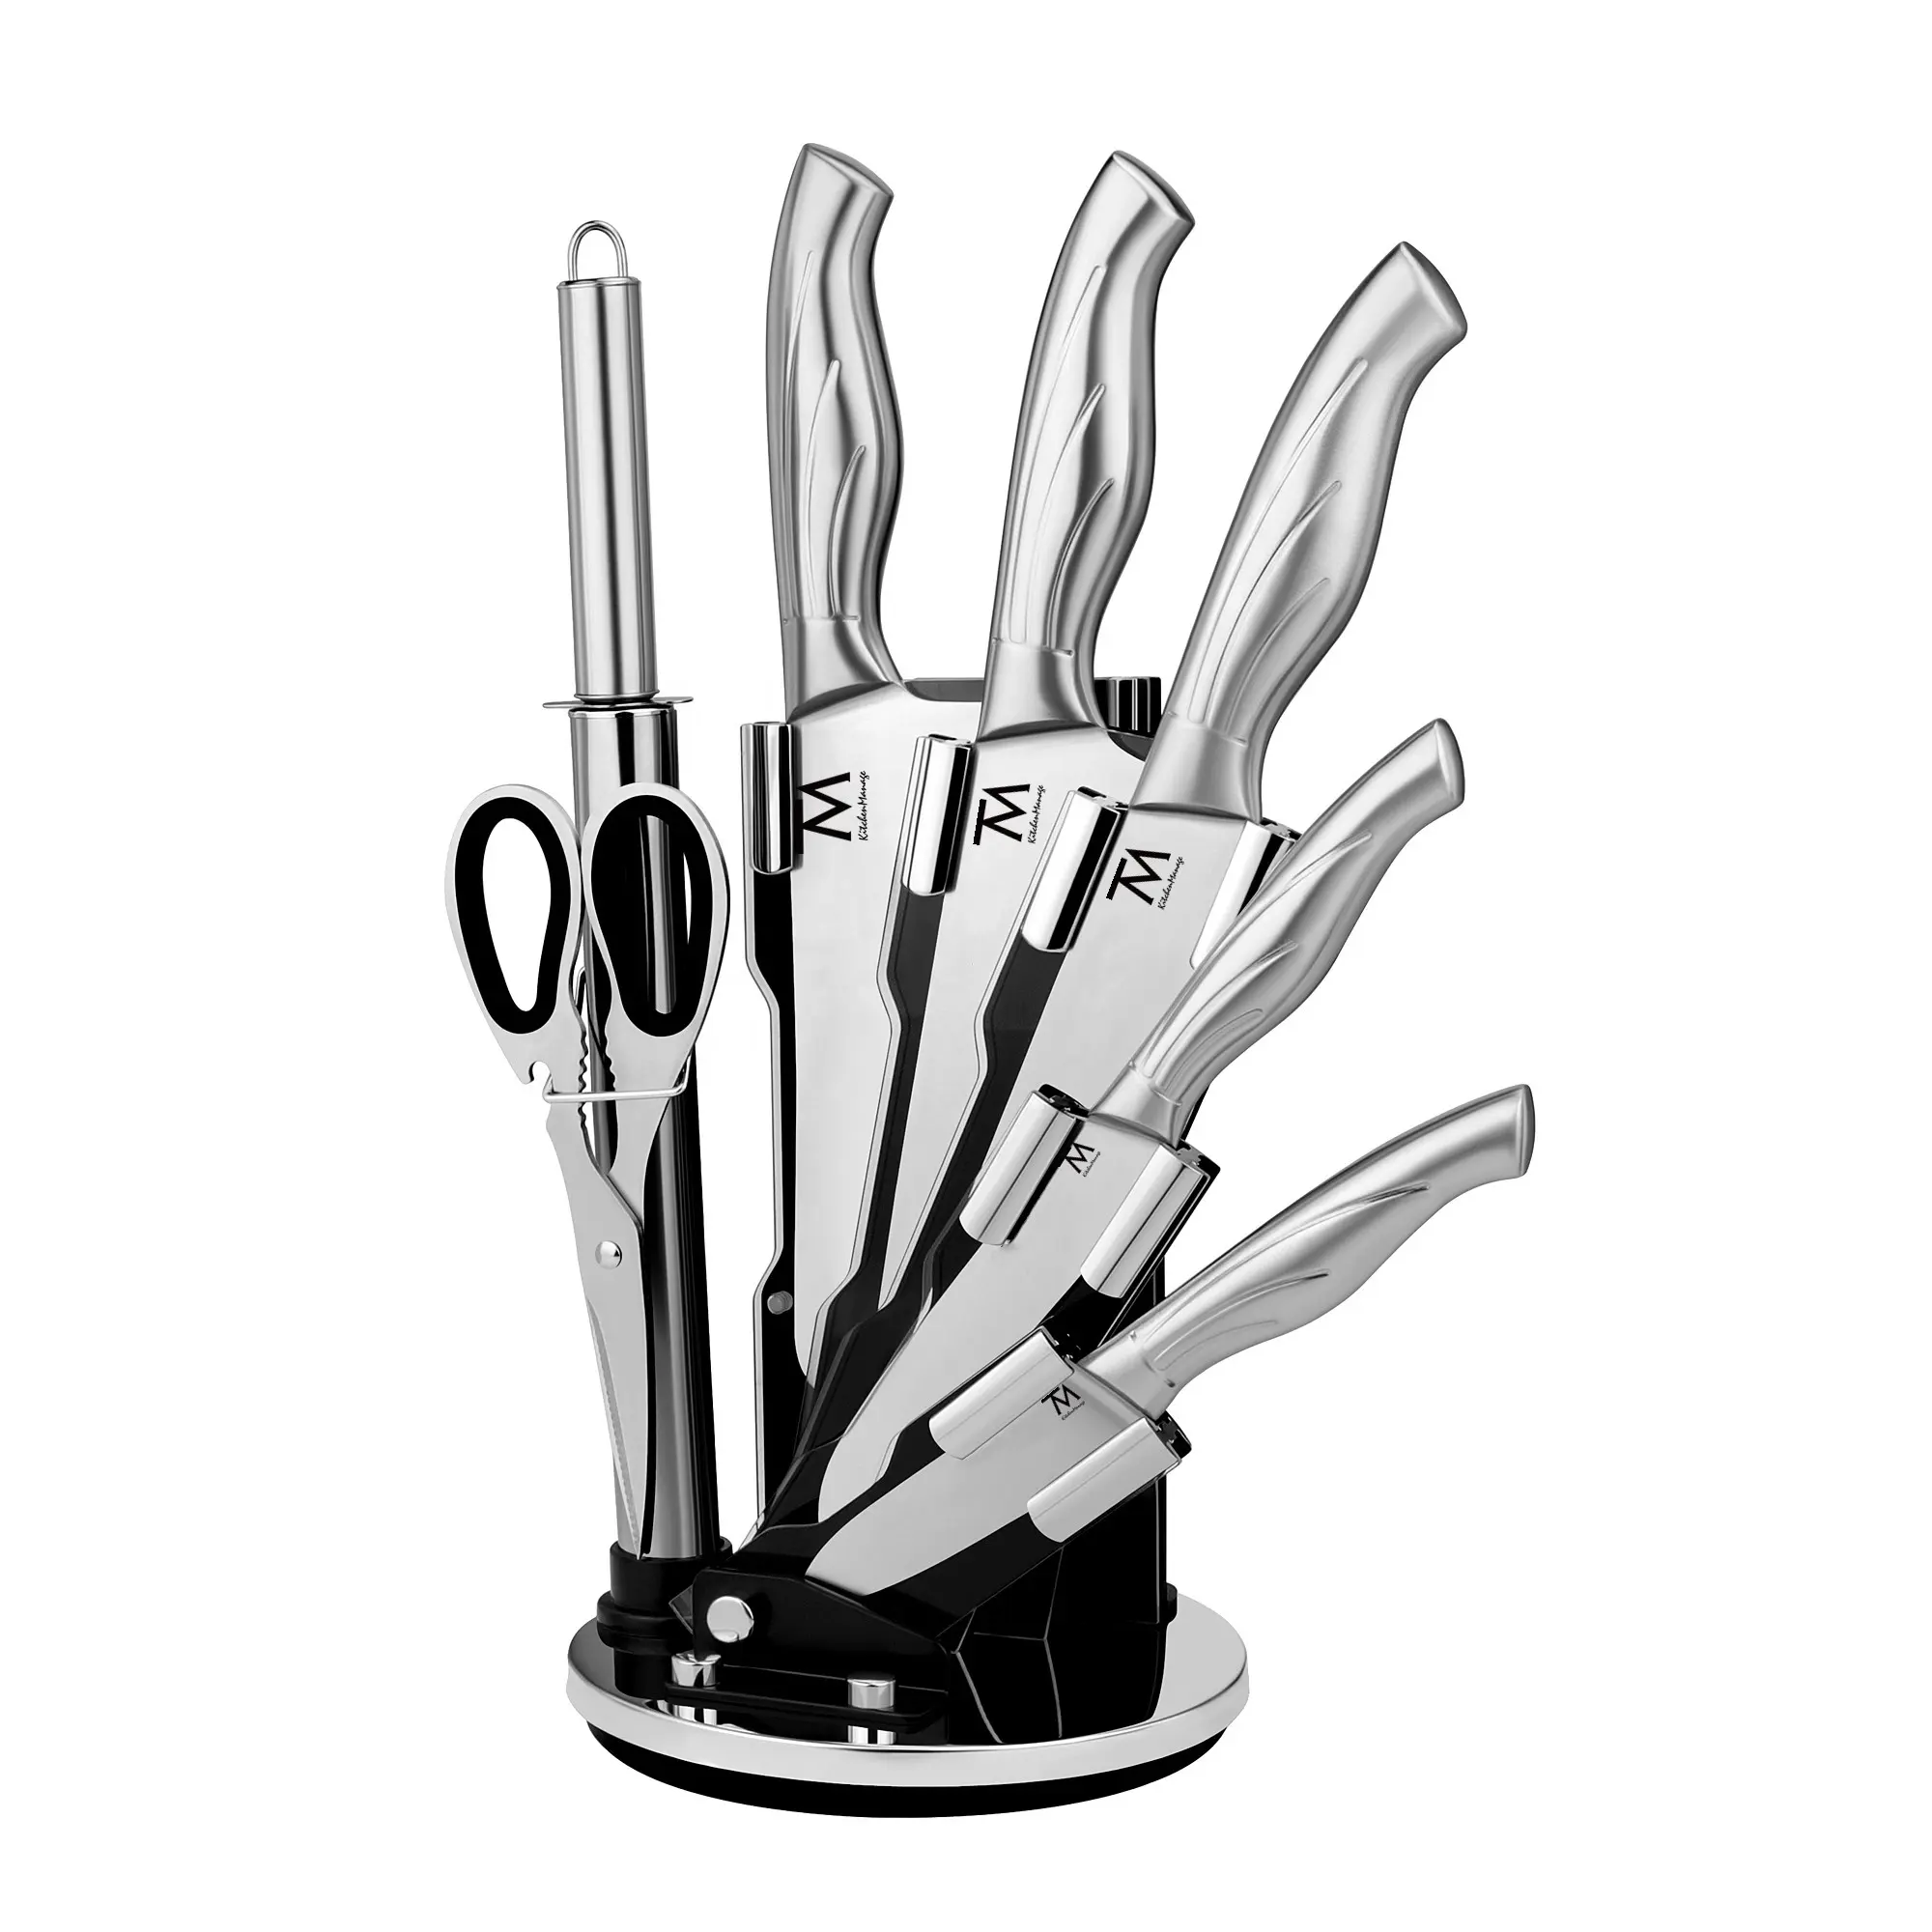 Messer-Conjunto de utensilios de cocina de acero inoxidable con mango hueco, conjunto profesional personalizado con afilador, 8 unidades